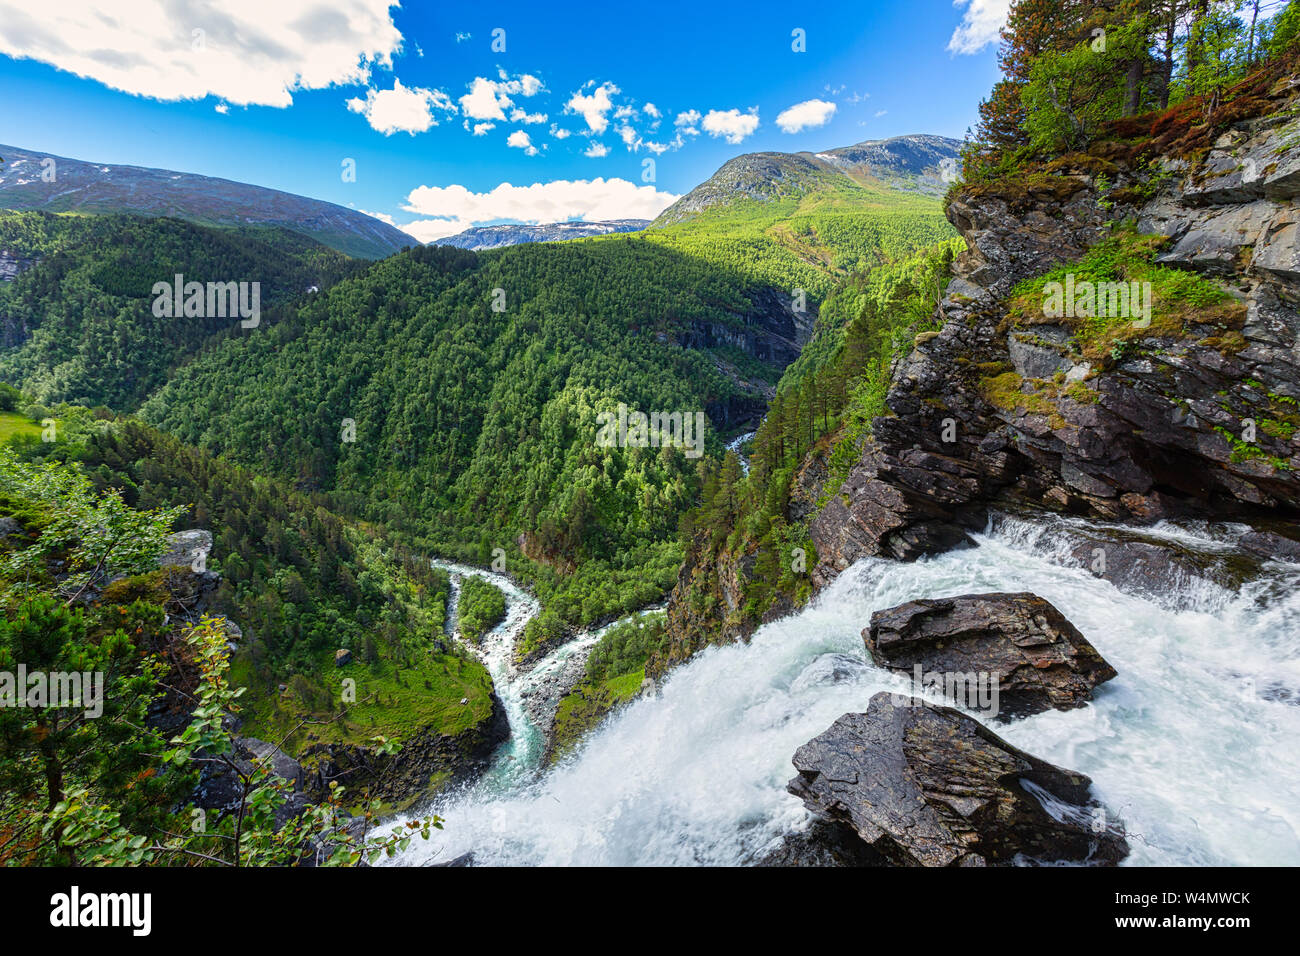 Eine wilde und beeindruckende norwegische Landschaft mit Bergen, Flüssen, Wäldern im Sommer - ein beliebtes Urlaubsziel - Norwegen Stockfoto